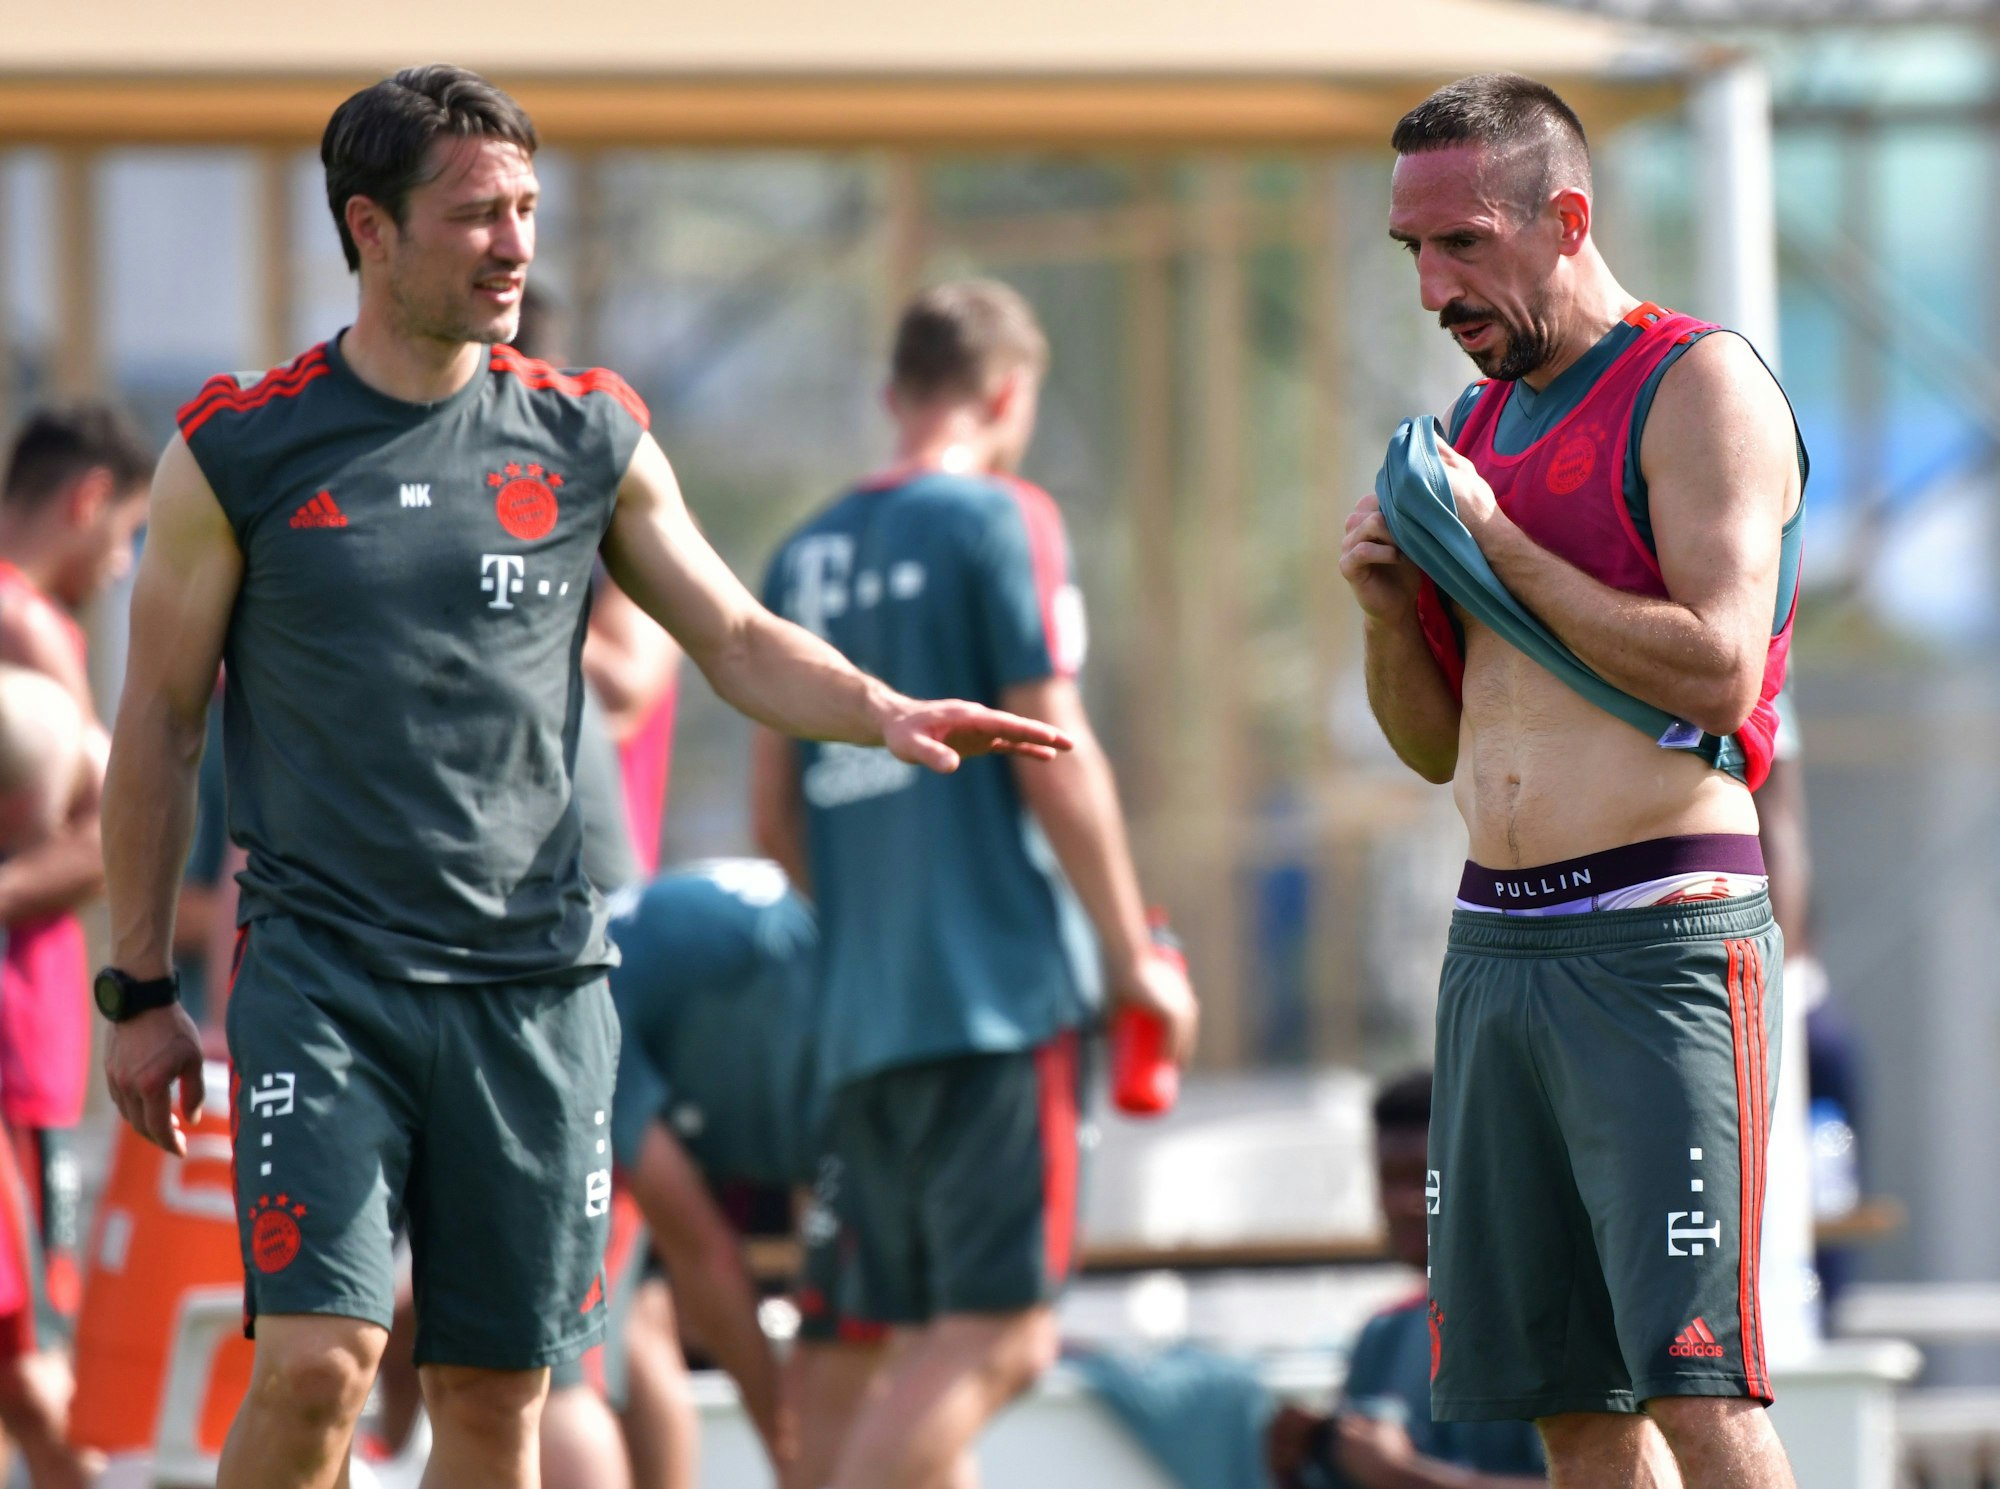 Trainer Niko Kovac und Franck Ribéry stehen während einer Übungseinheit am Vormittag gemeinsam auf dem Platz.